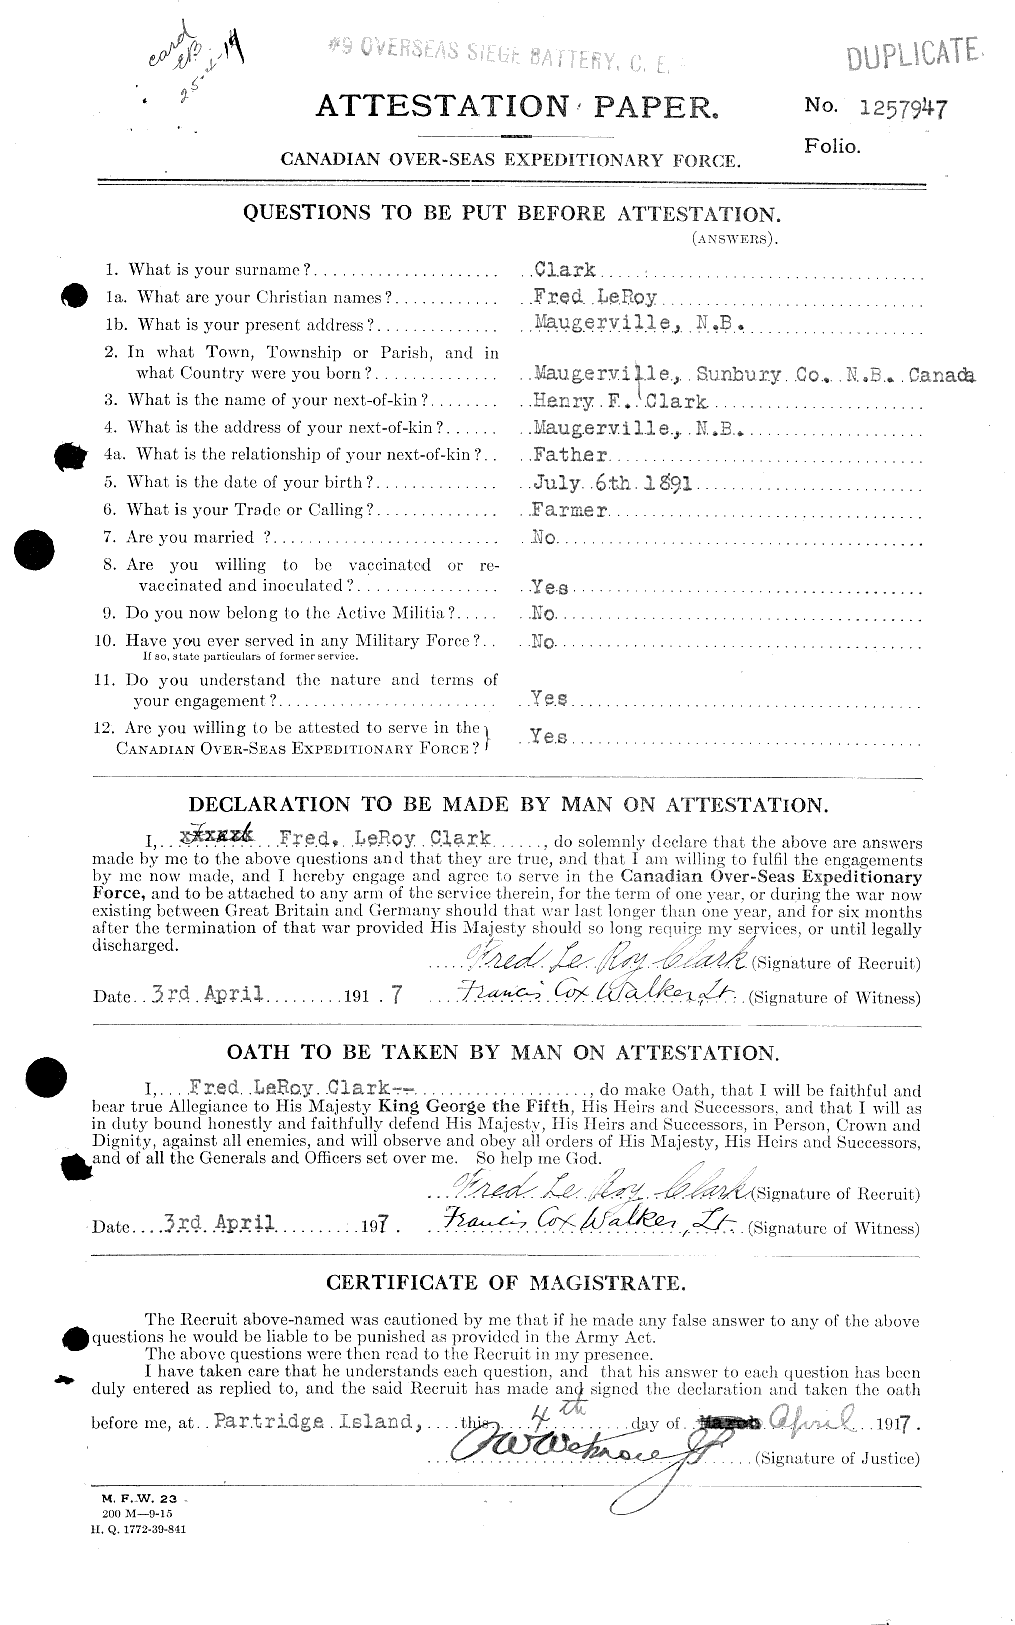 Dossiers du Personnel de la Première Guerre mondiale - CEC 020980a